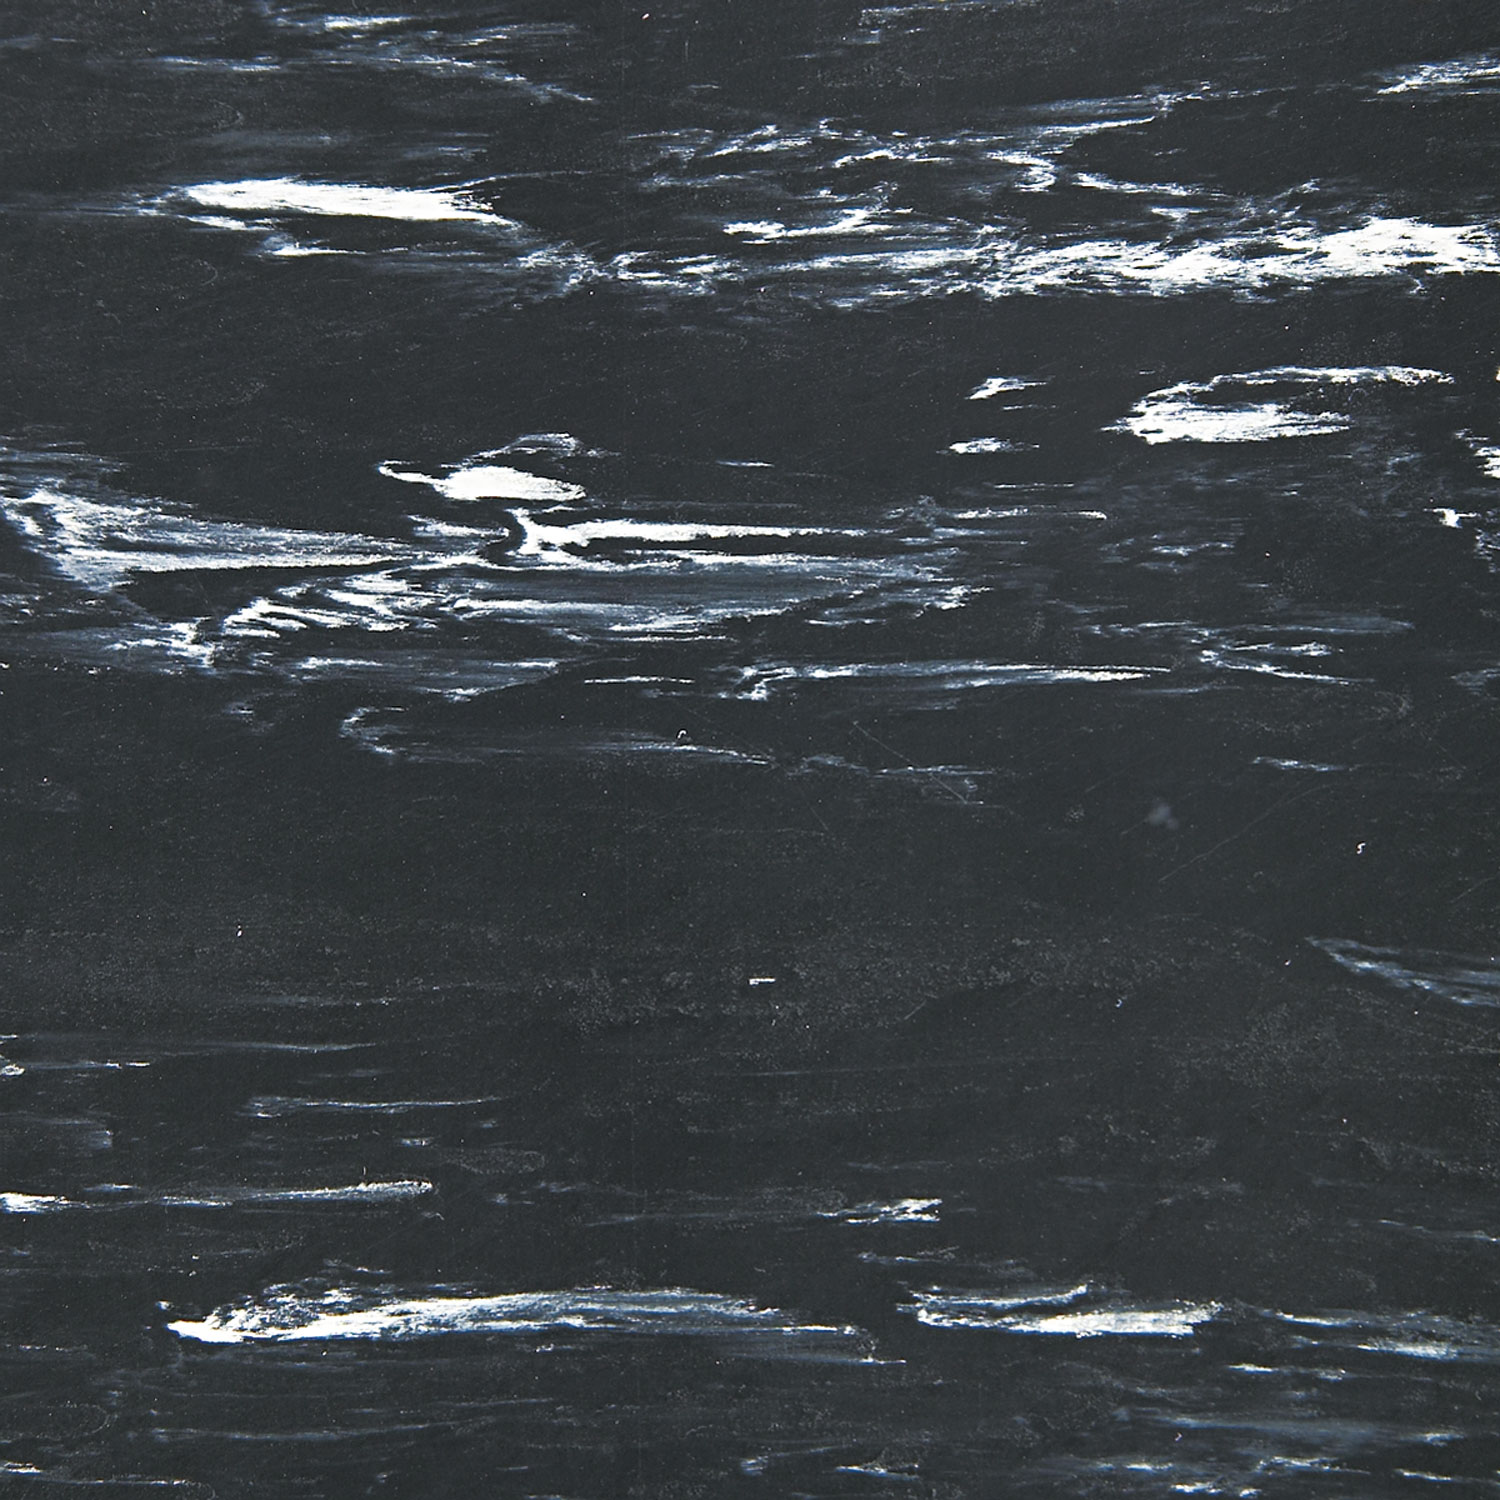 Cushion-Step Surface Mat, 36 x 72, Marbleized Rubber, Black